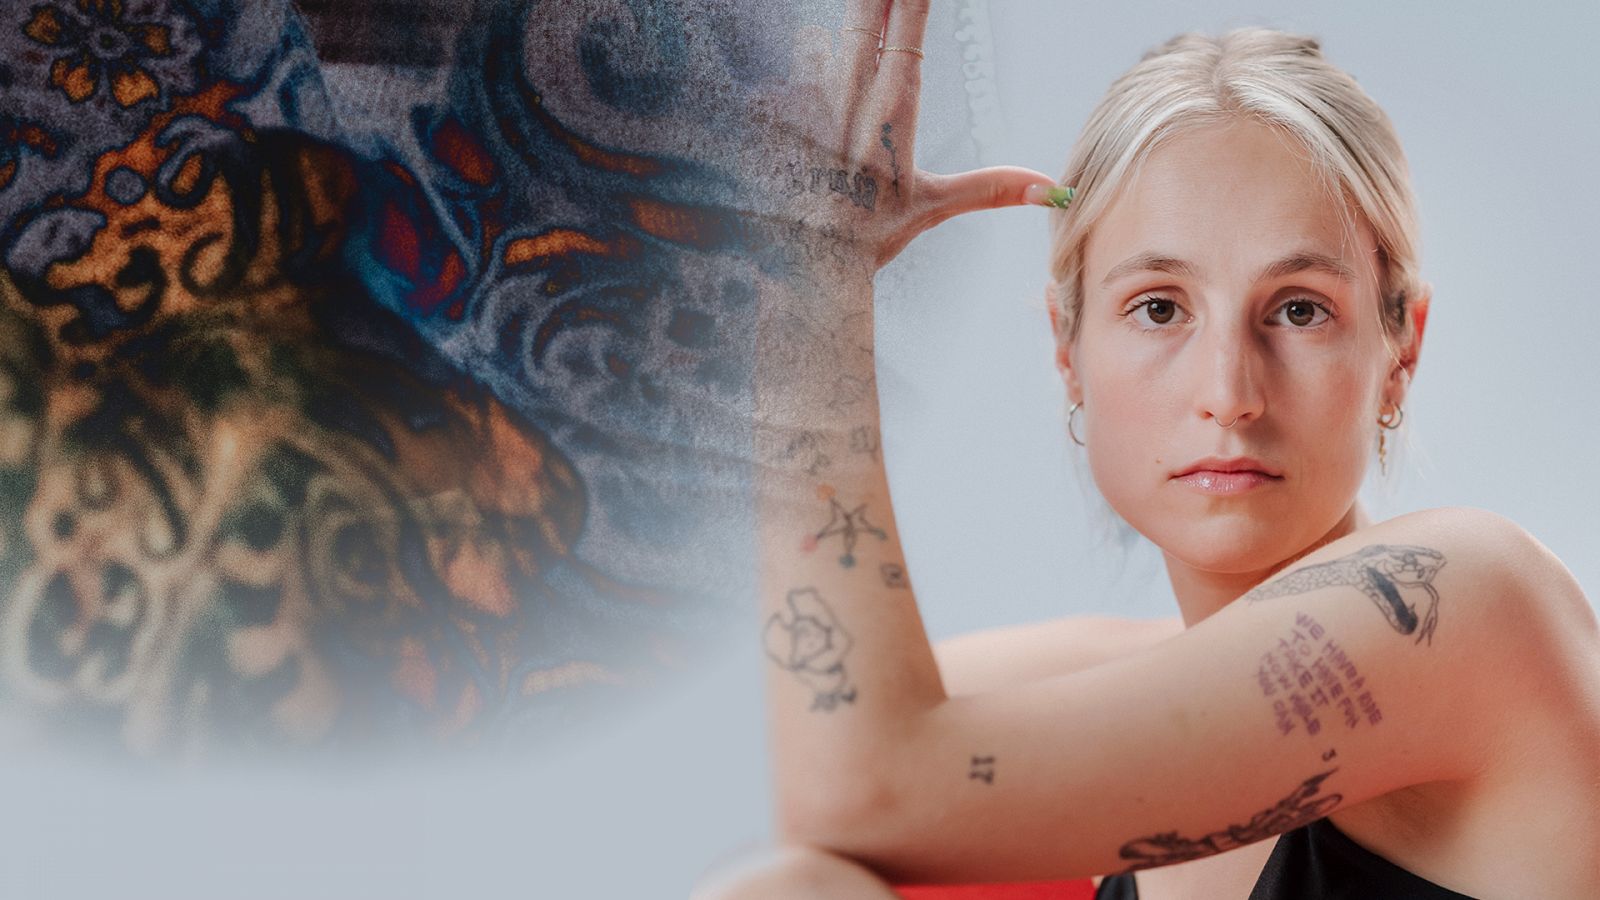 Tatuajes: María Escarmiento en Tintas | Playz